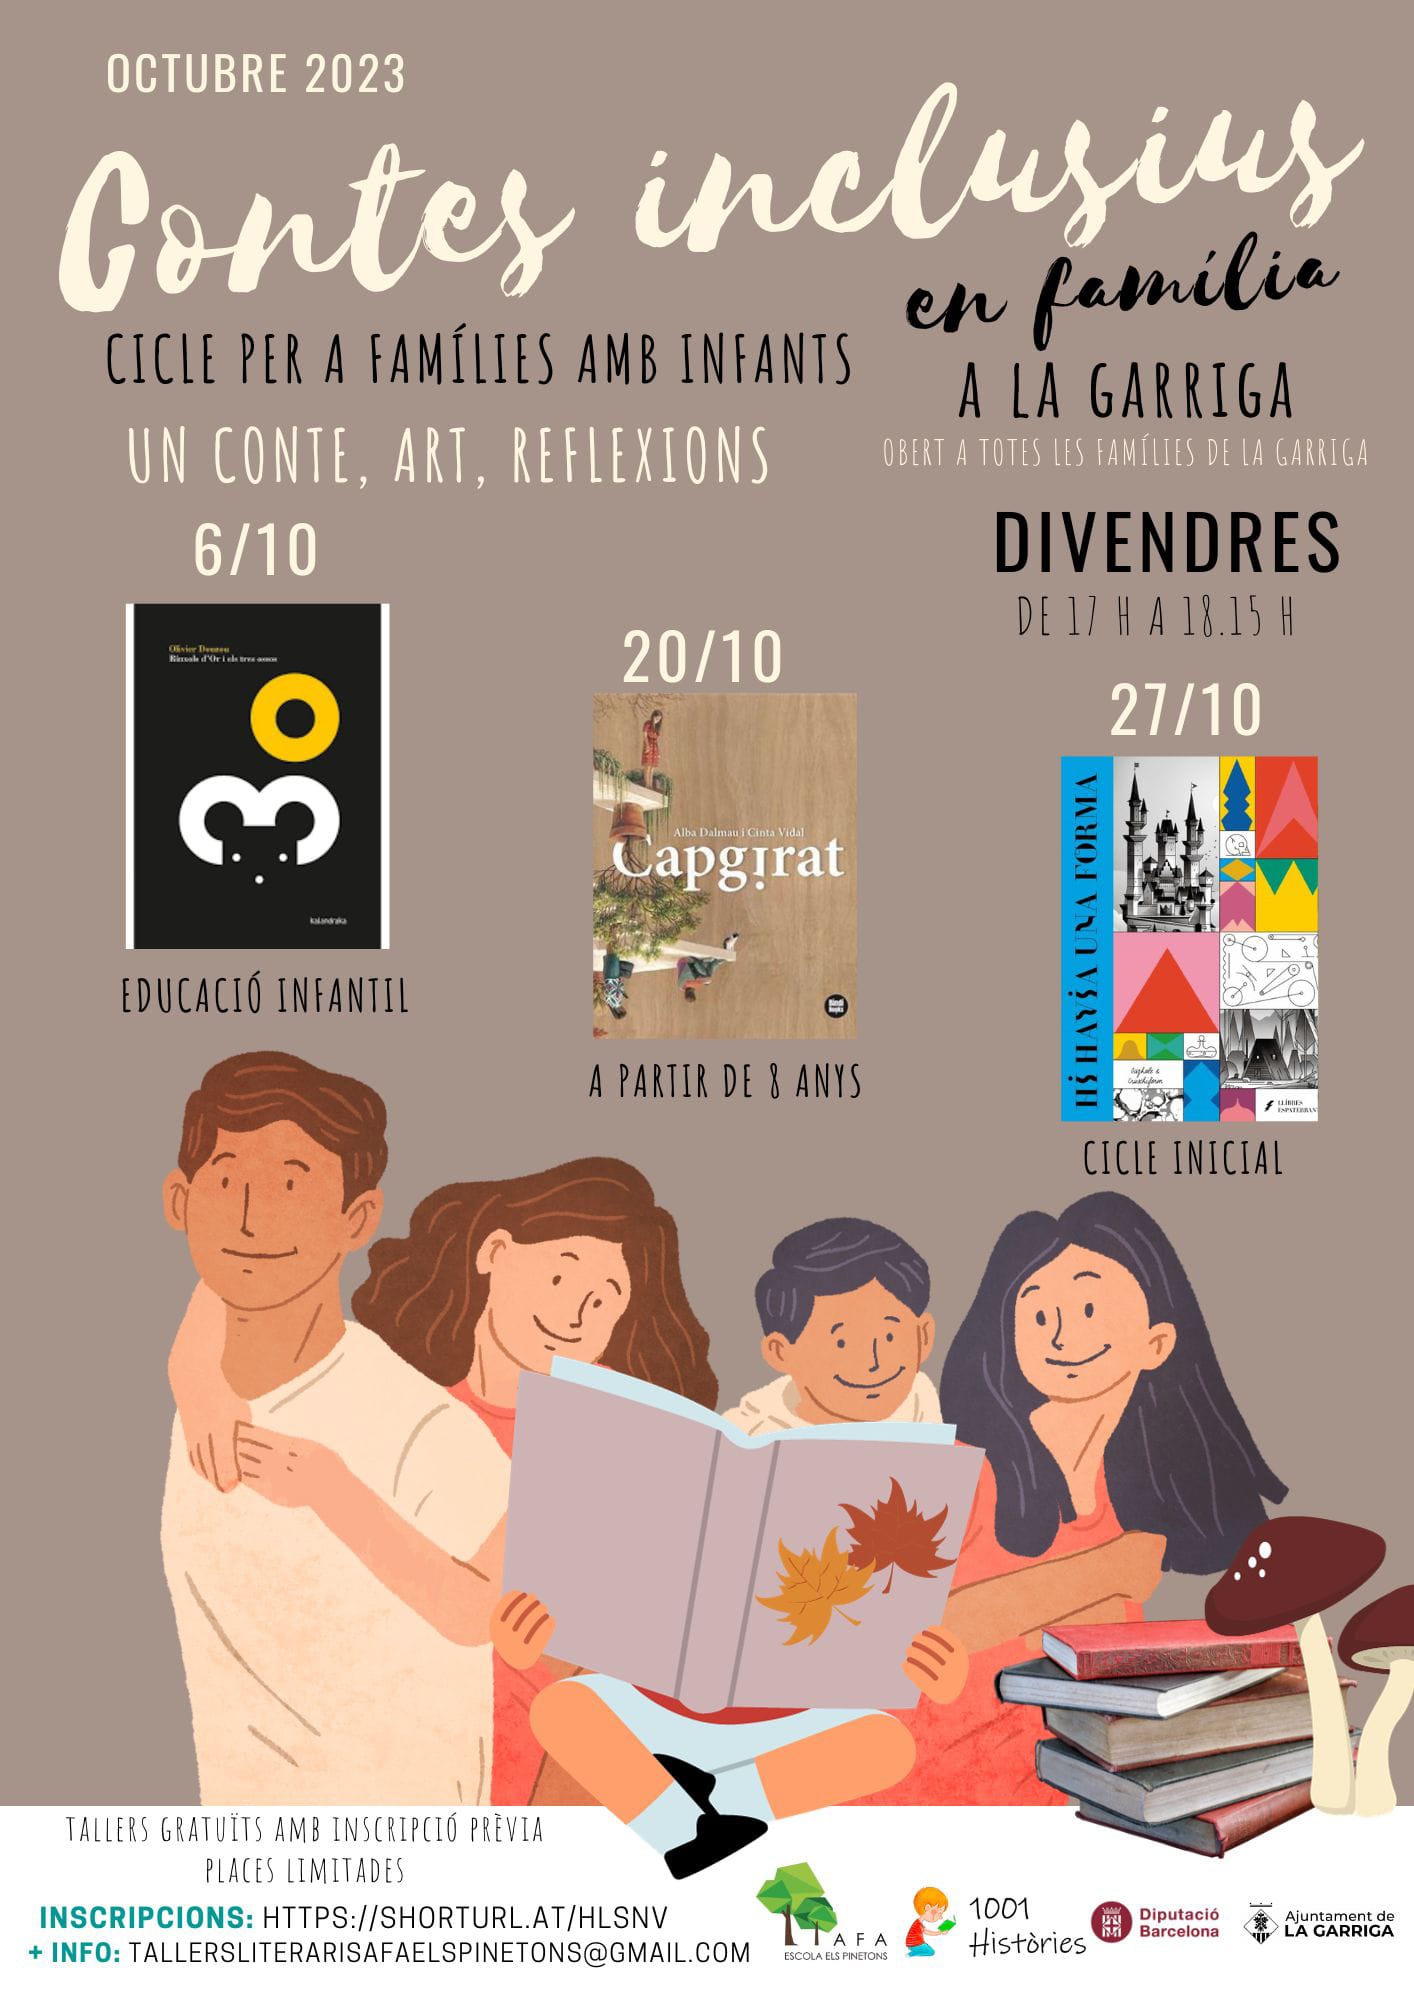 Vinculem-nos. Projecte Contes inclusius Els Pinetons la Garriga